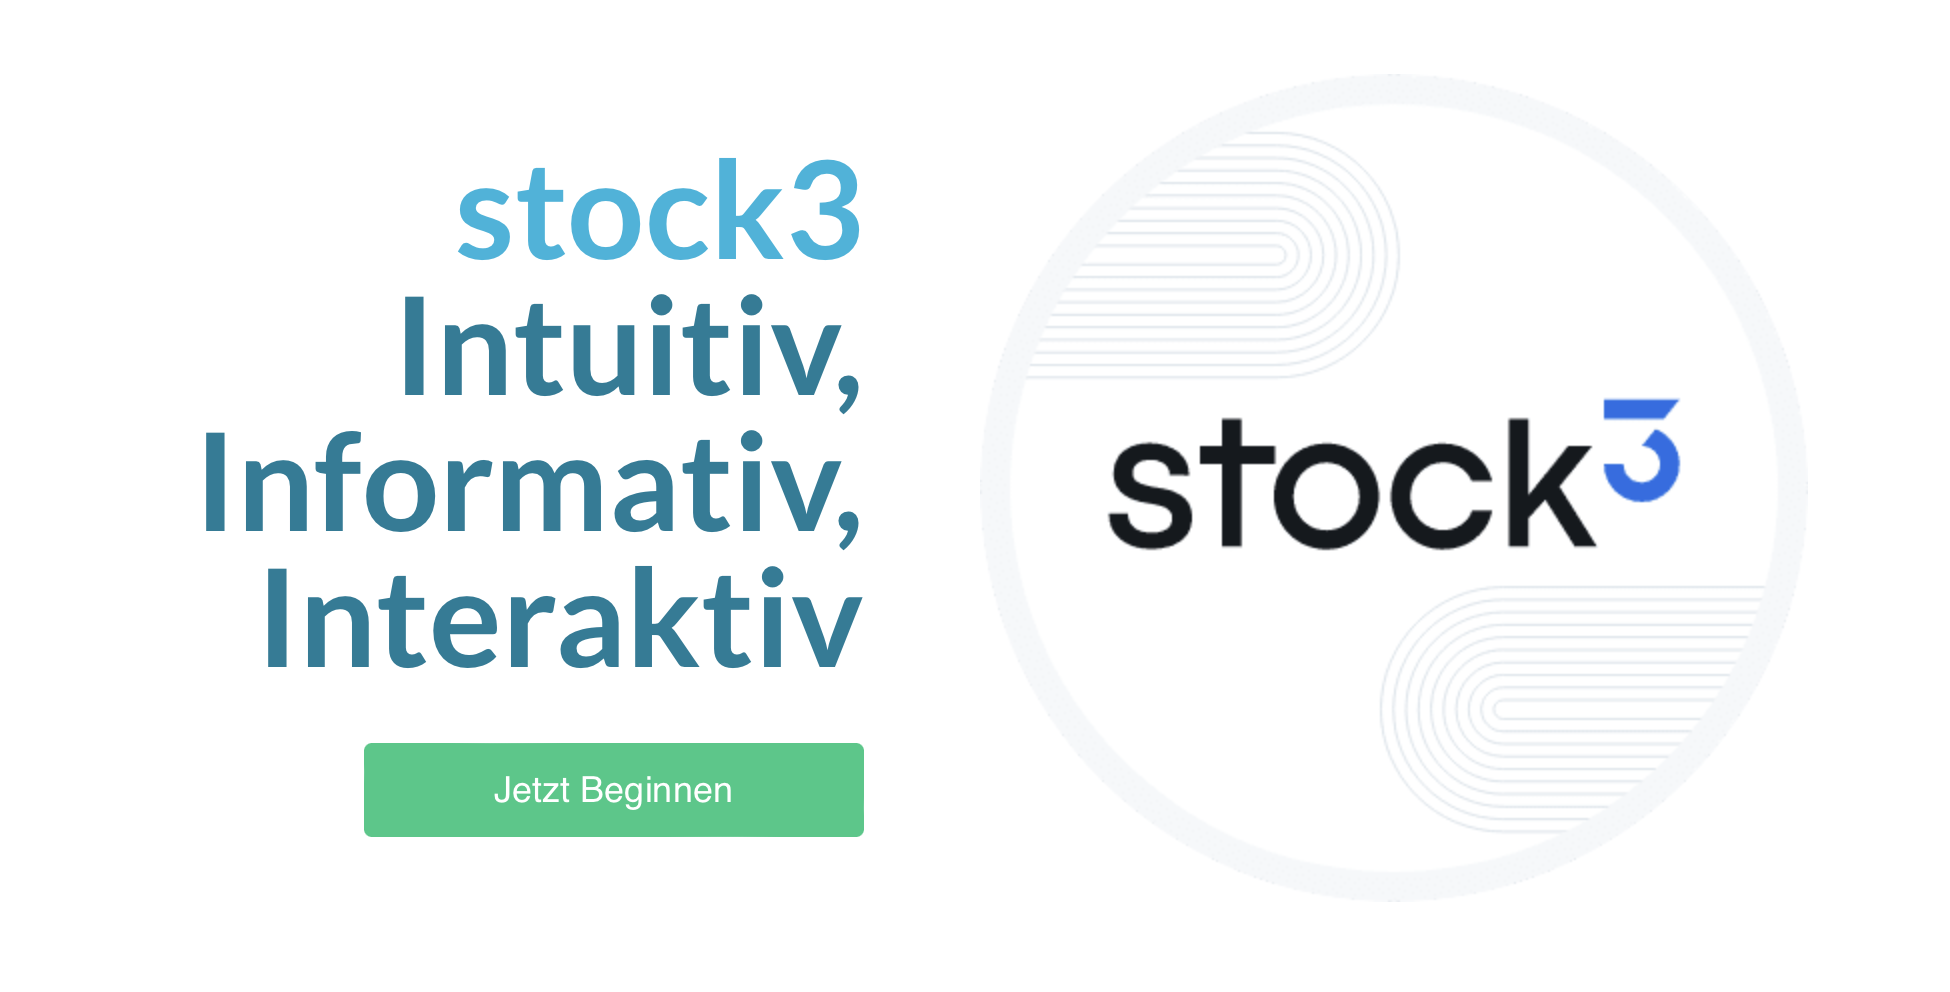 Stock3